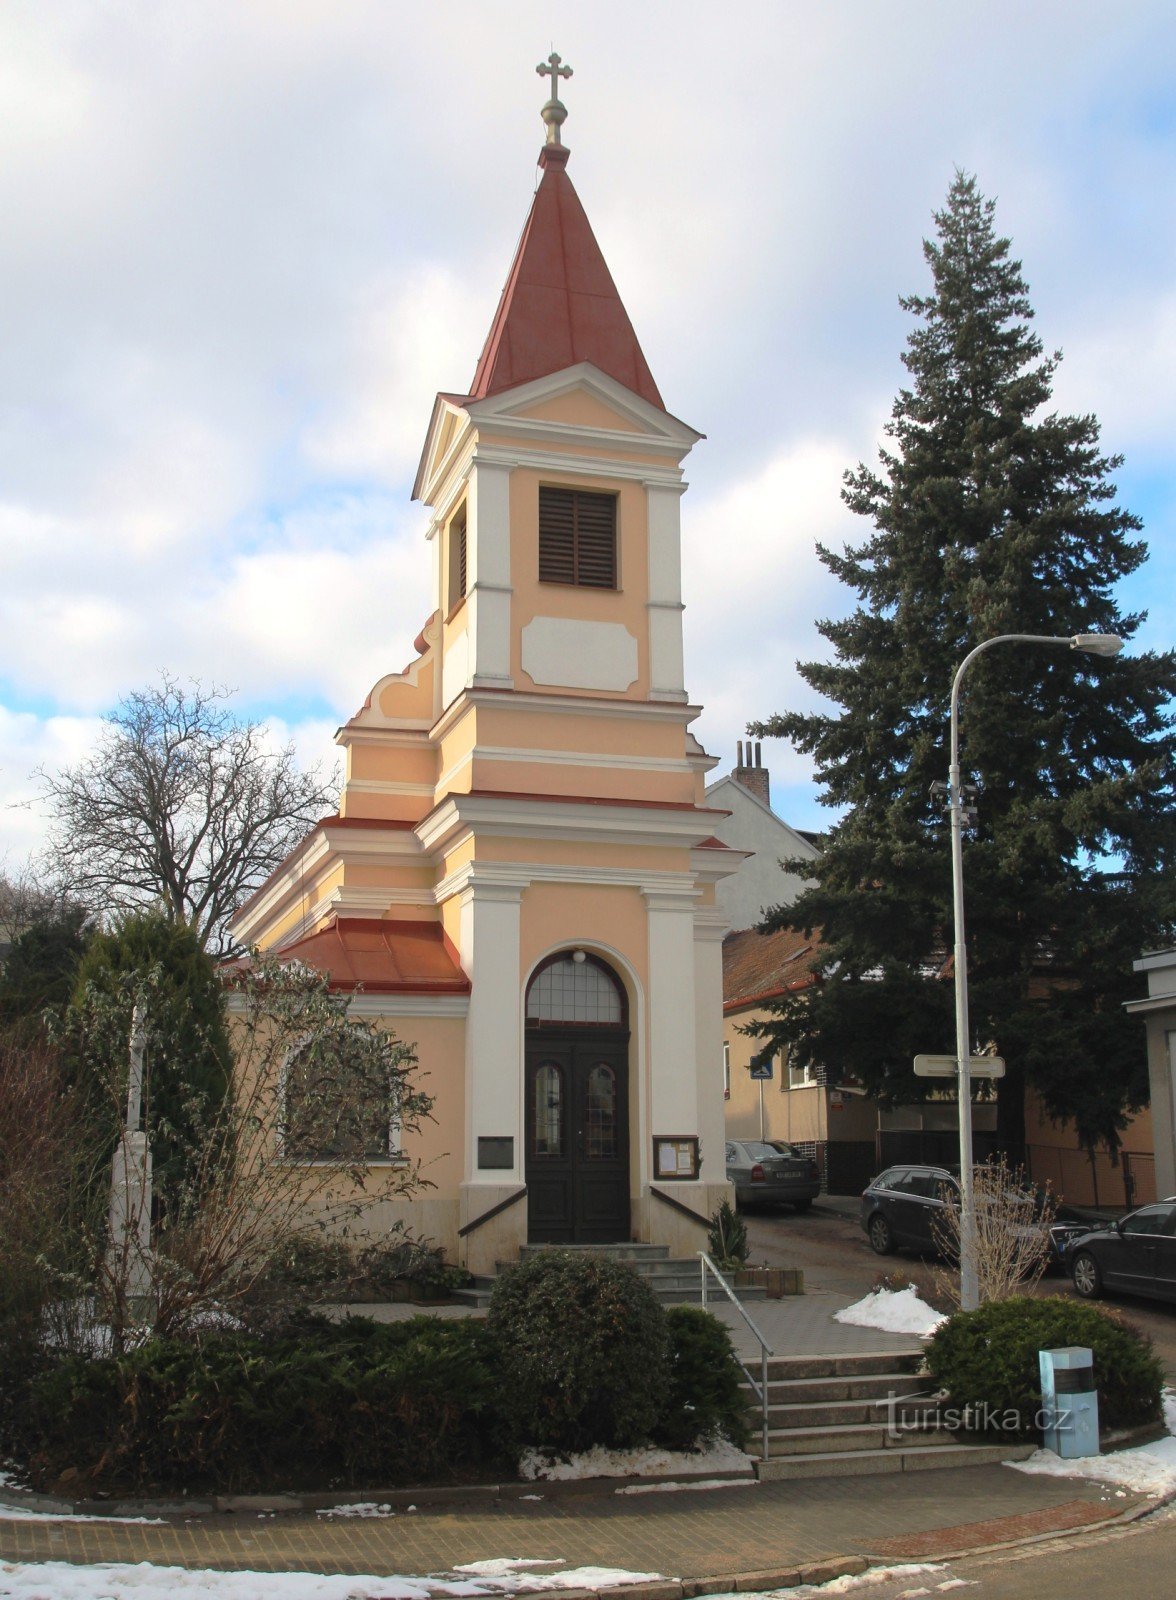 Brno-Kohoutovice - capela Sf. Familiile